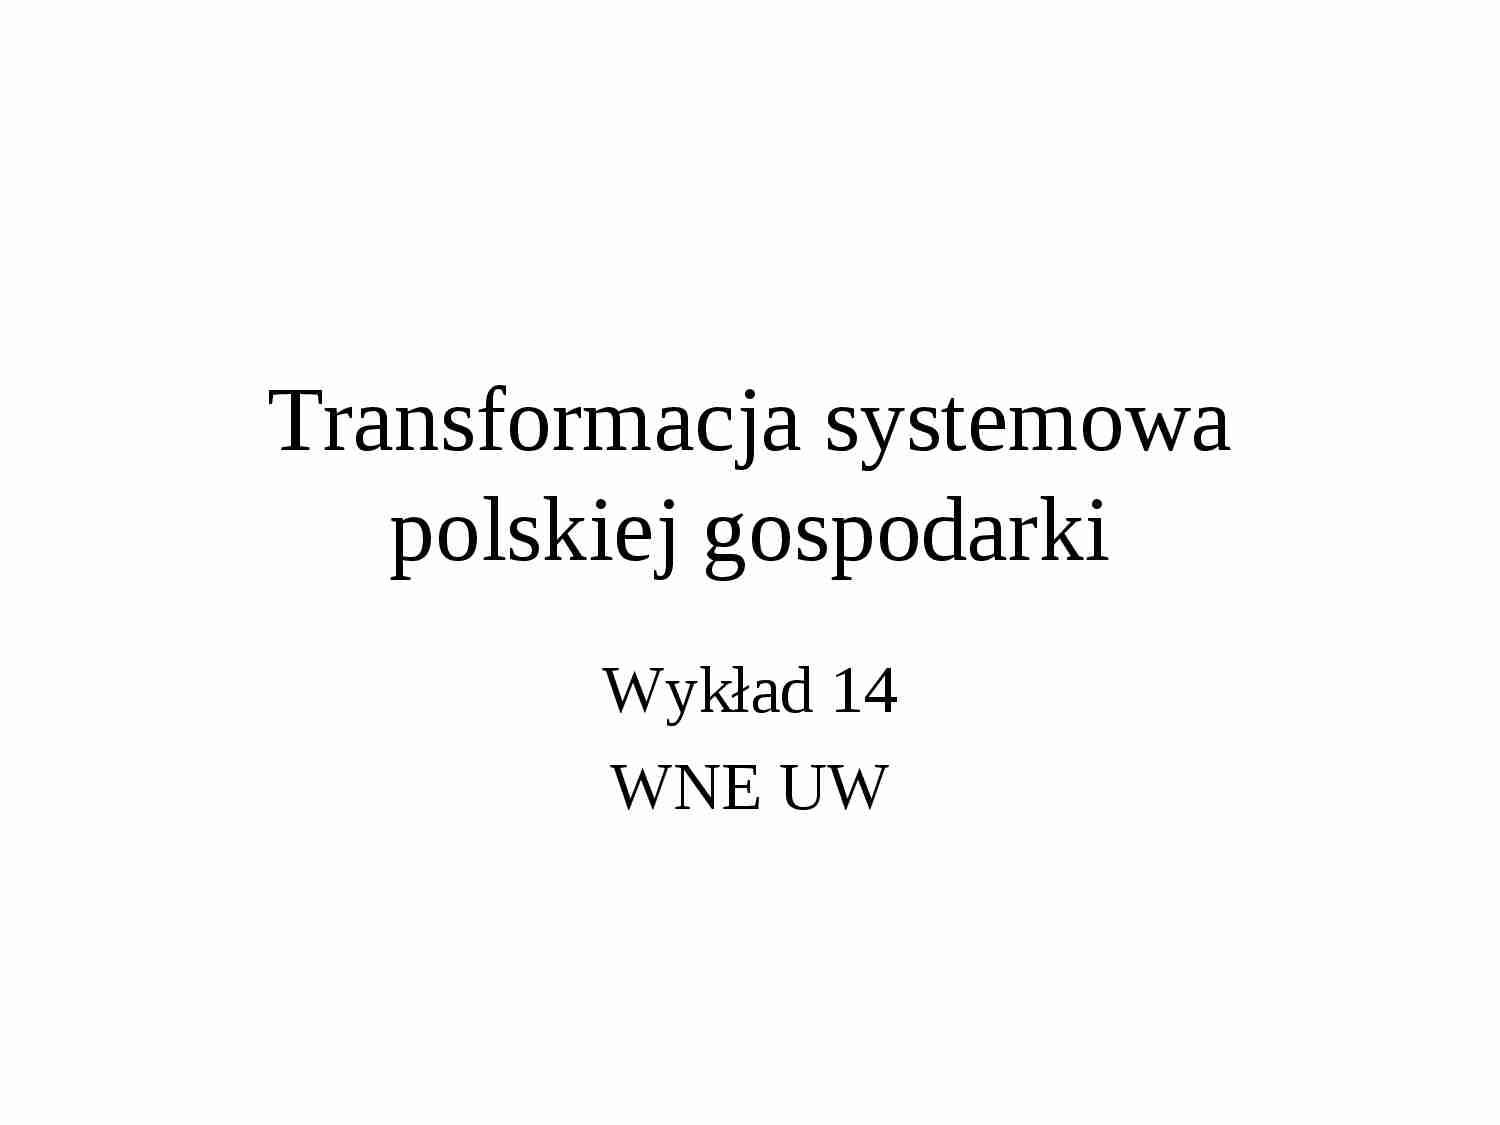 Transformacja systemowa polskiej gospodarki - wykład - strona 1